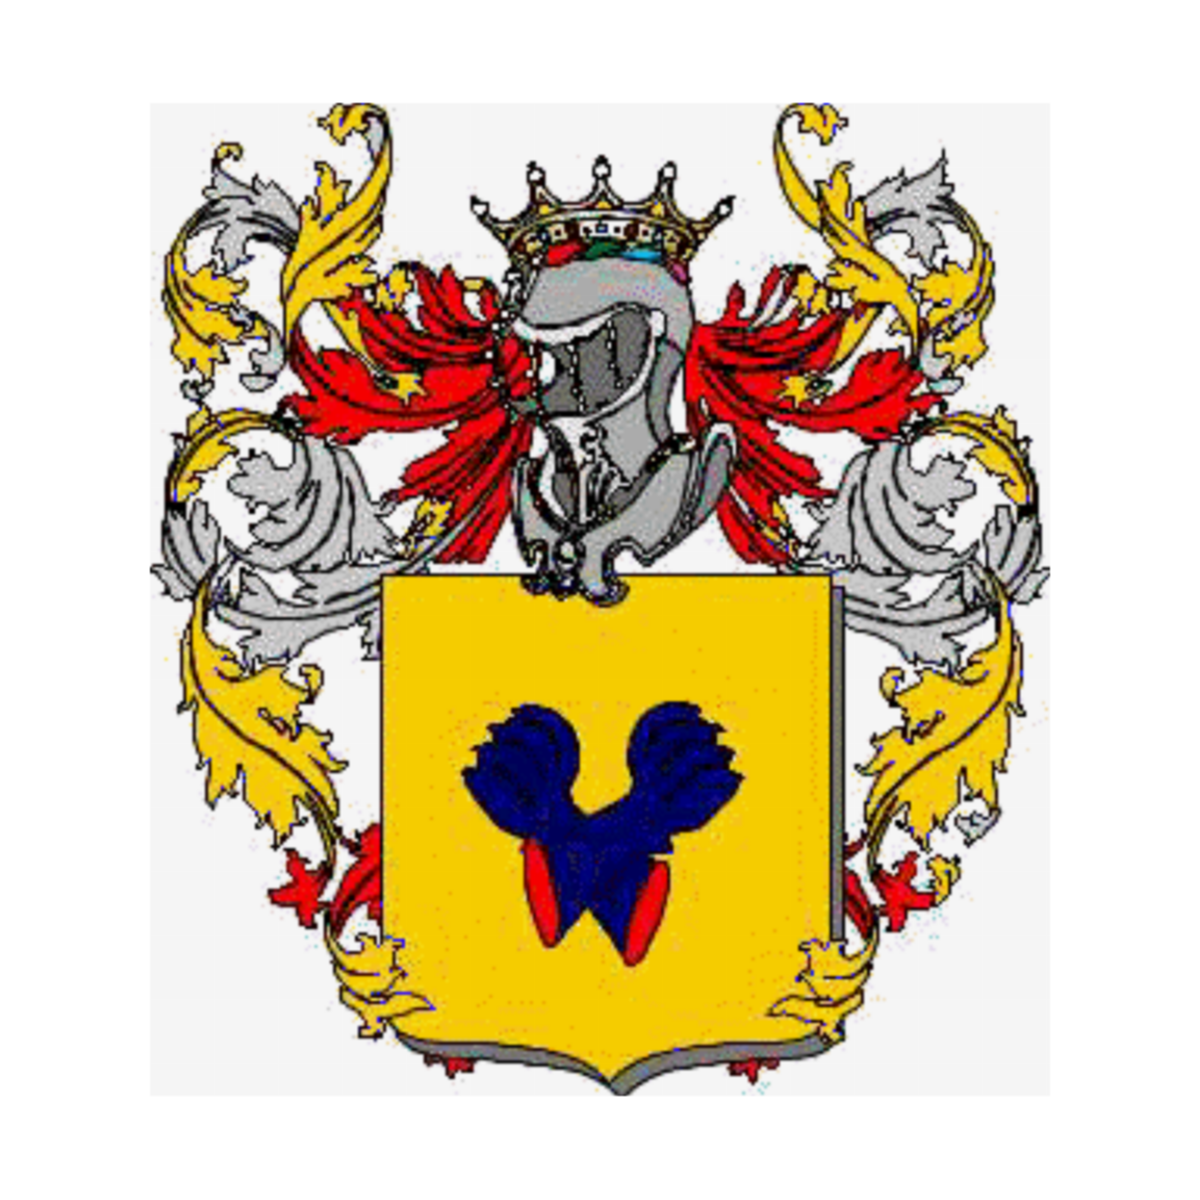 Prada familia heráldica genealogía escudo Prada